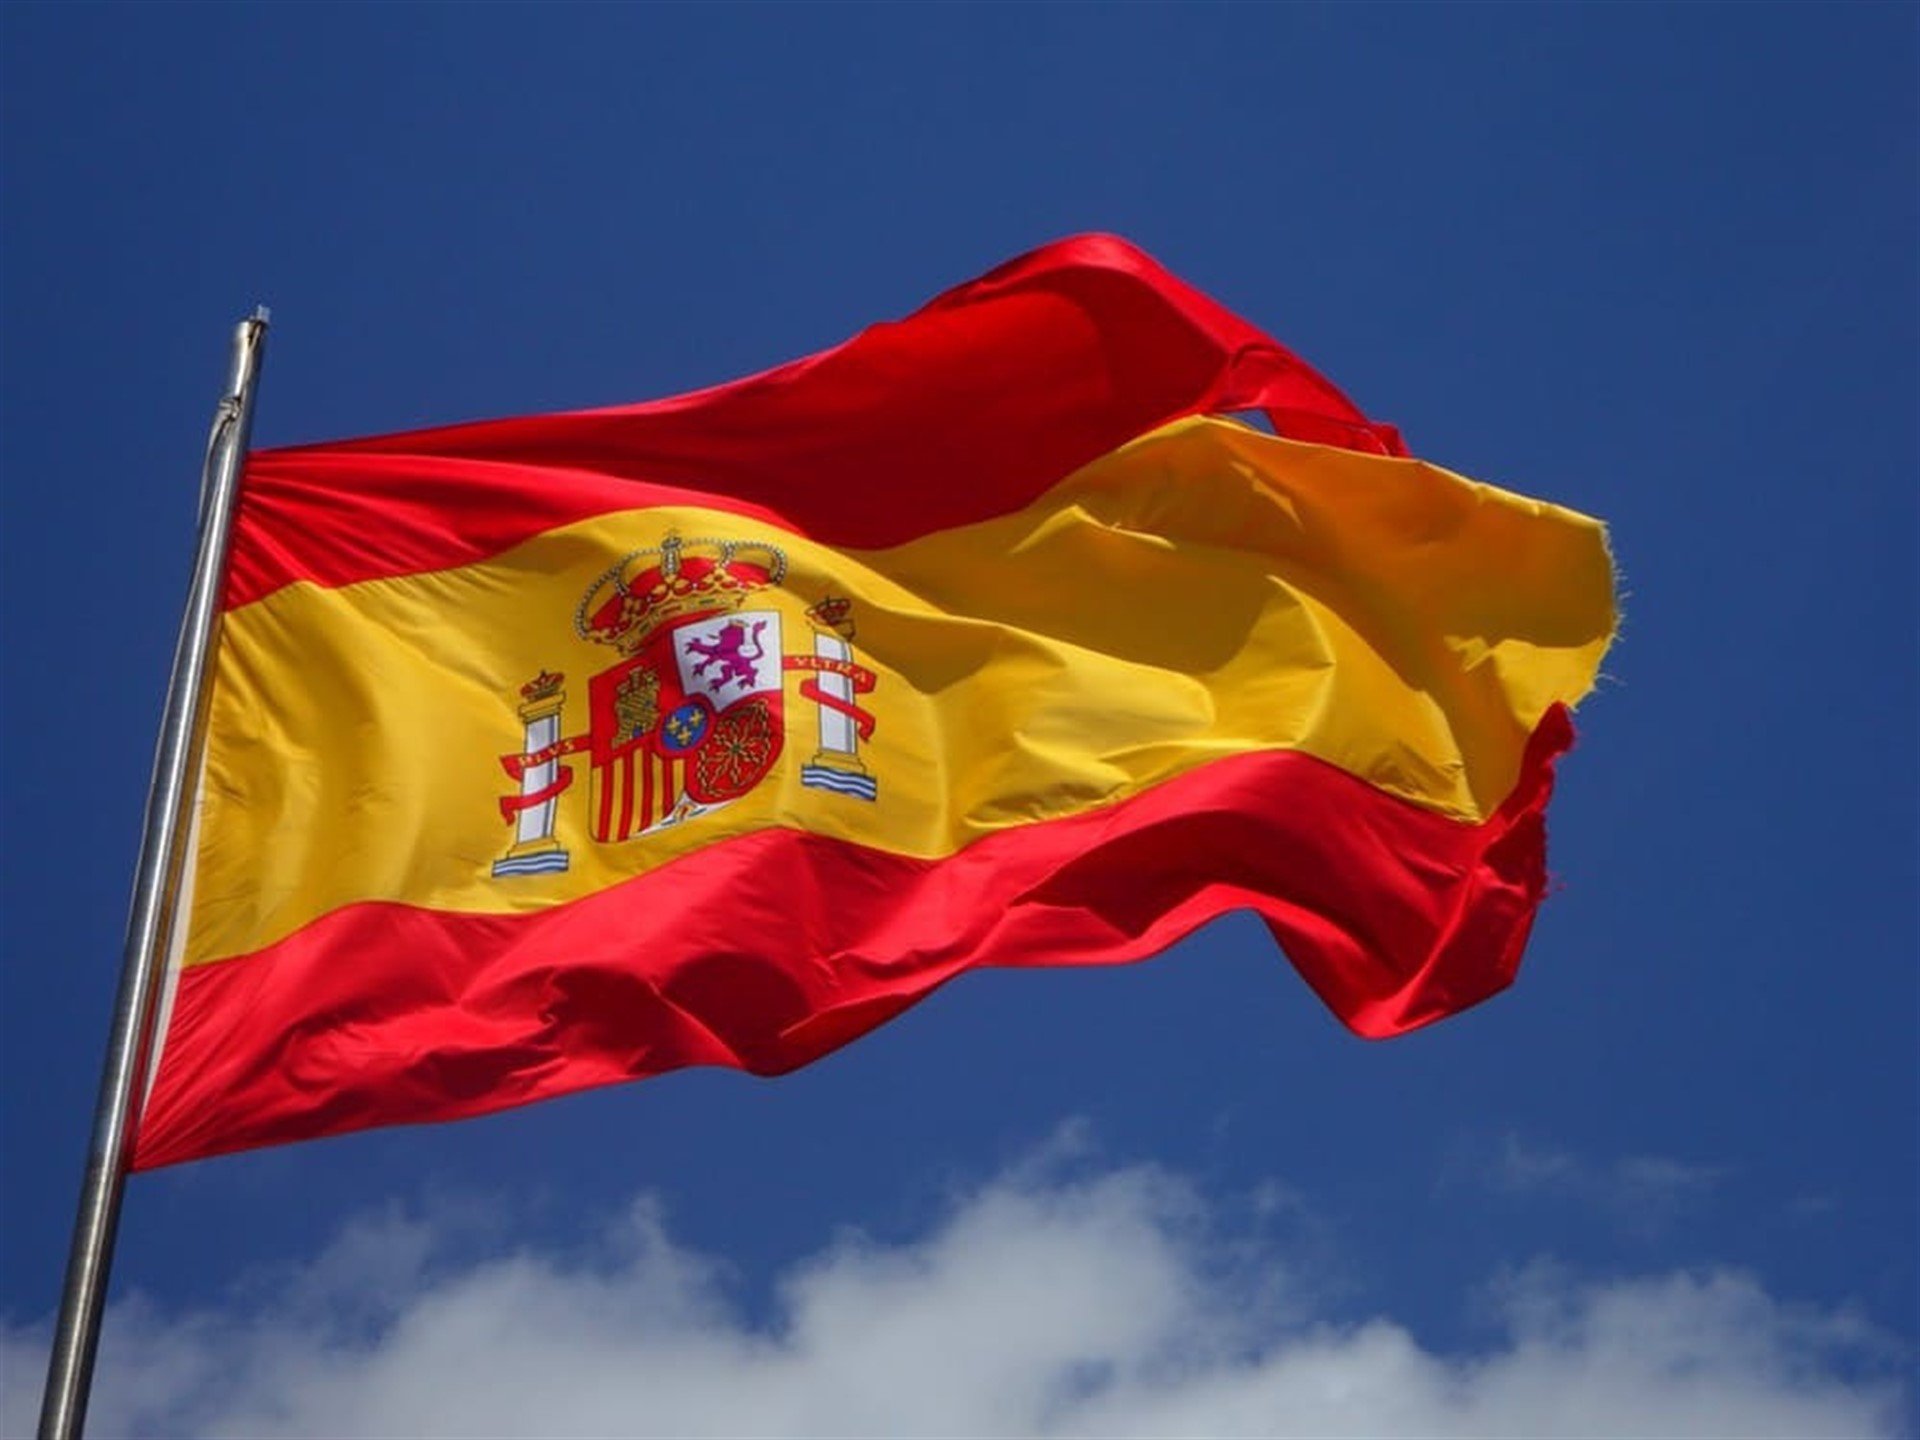 Vox vol hissar a Múrcia la bandera d'Espanya més gran del món